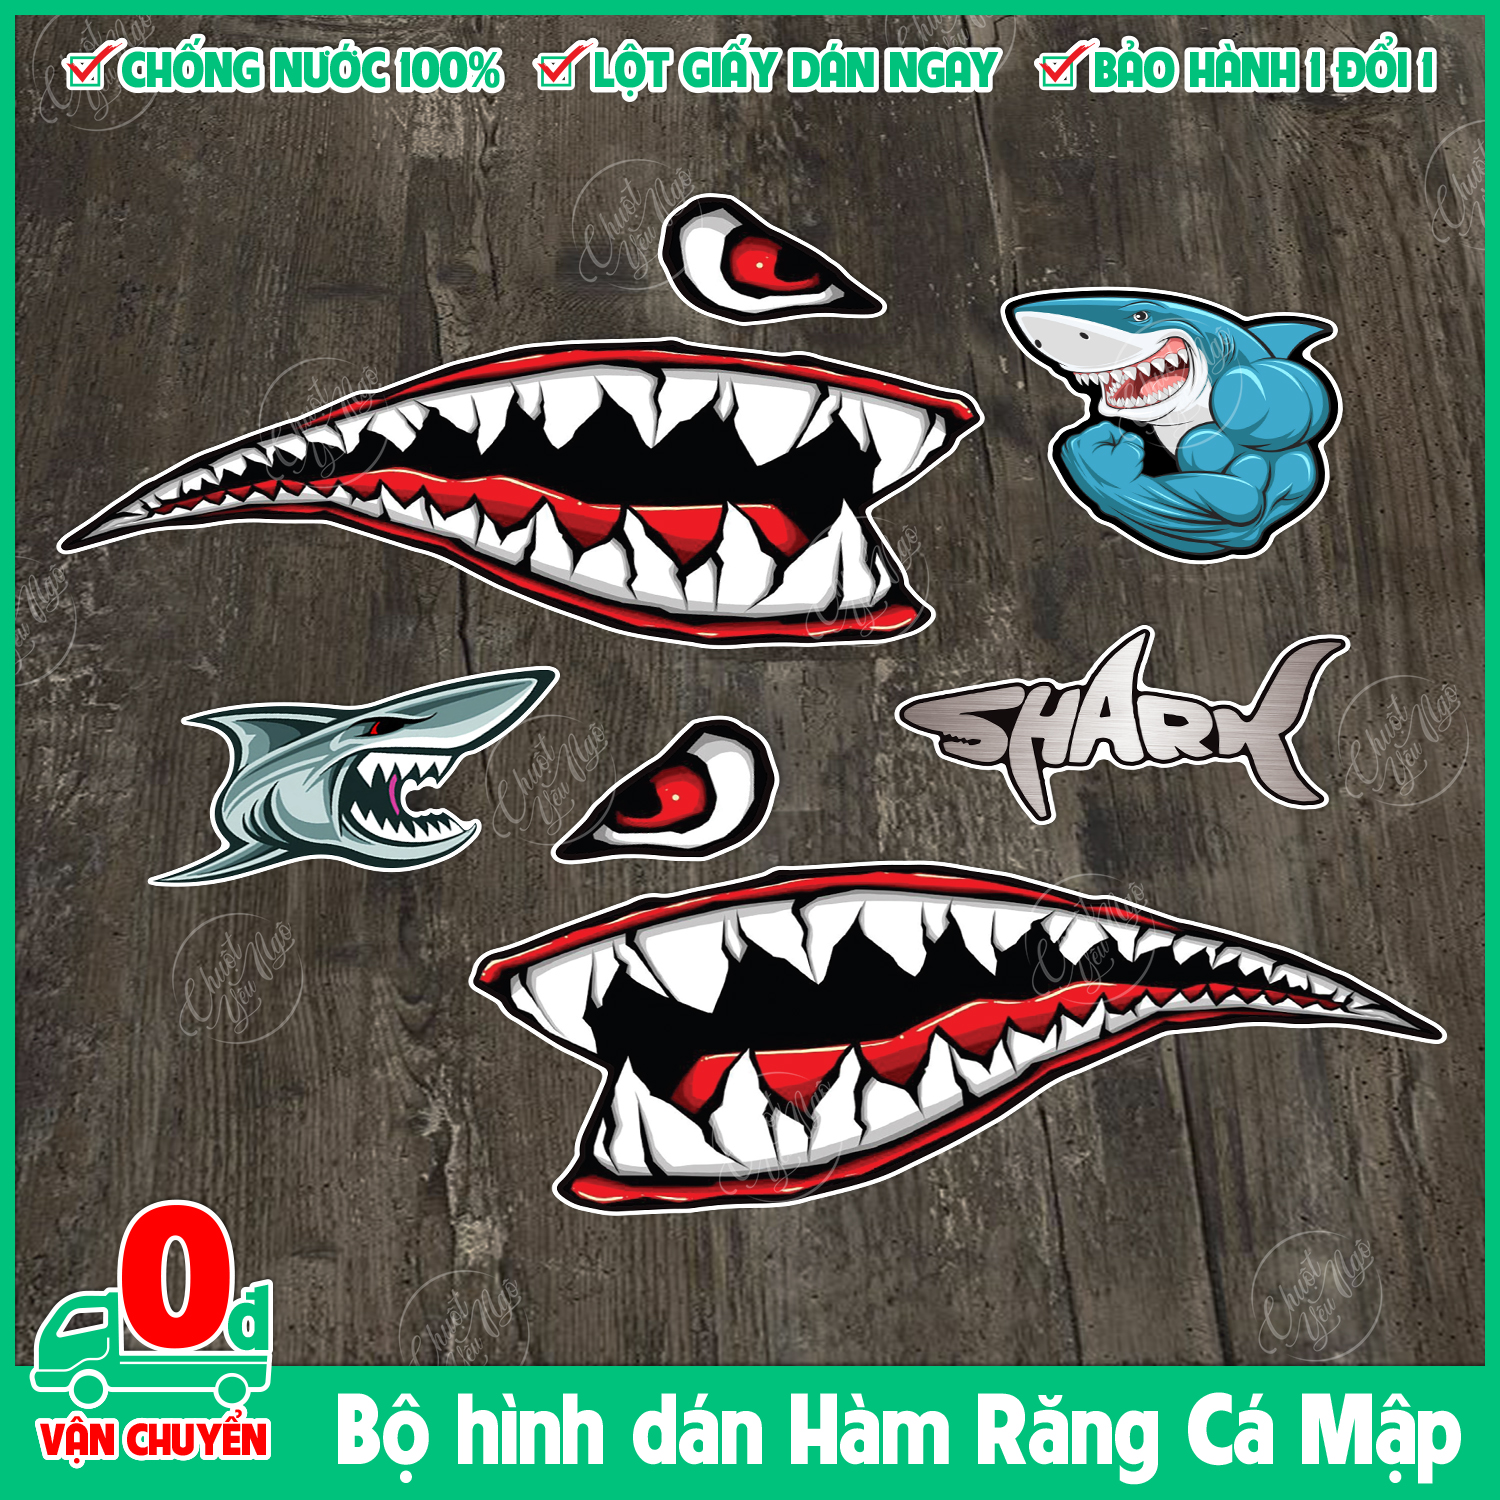 Cá Mập Có Miệng Mở Và Răng Sắc Nhọn Hình minh họa Sẵn có  Tải xuống Hình  ảnh Ngay bây giờ  Cá mập Răng Biển  iStock